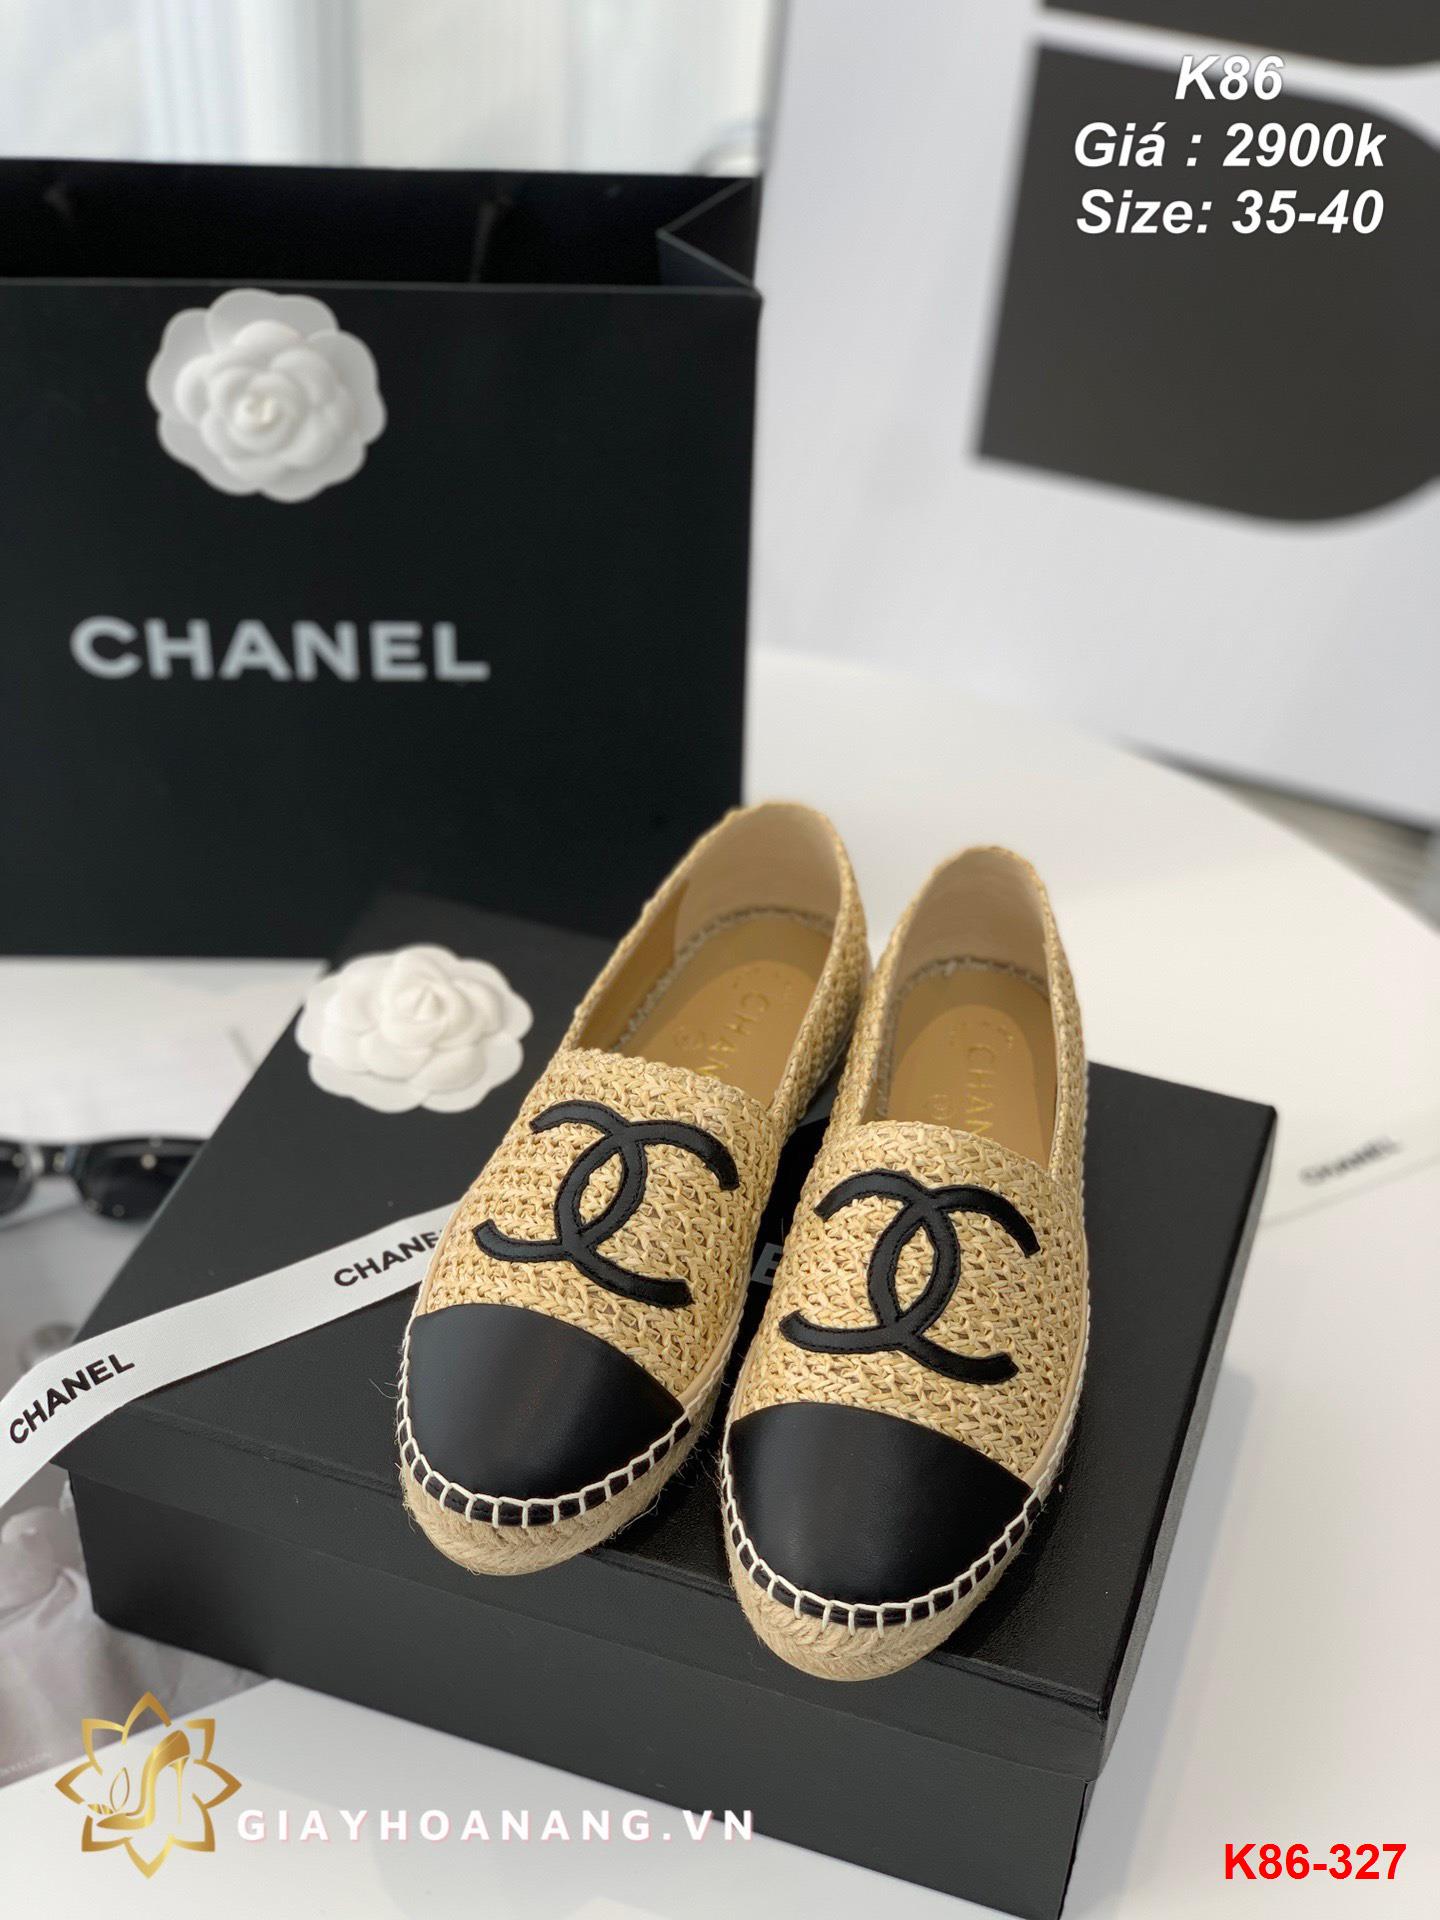 K86-327 Chanel giày lười siêu cấp